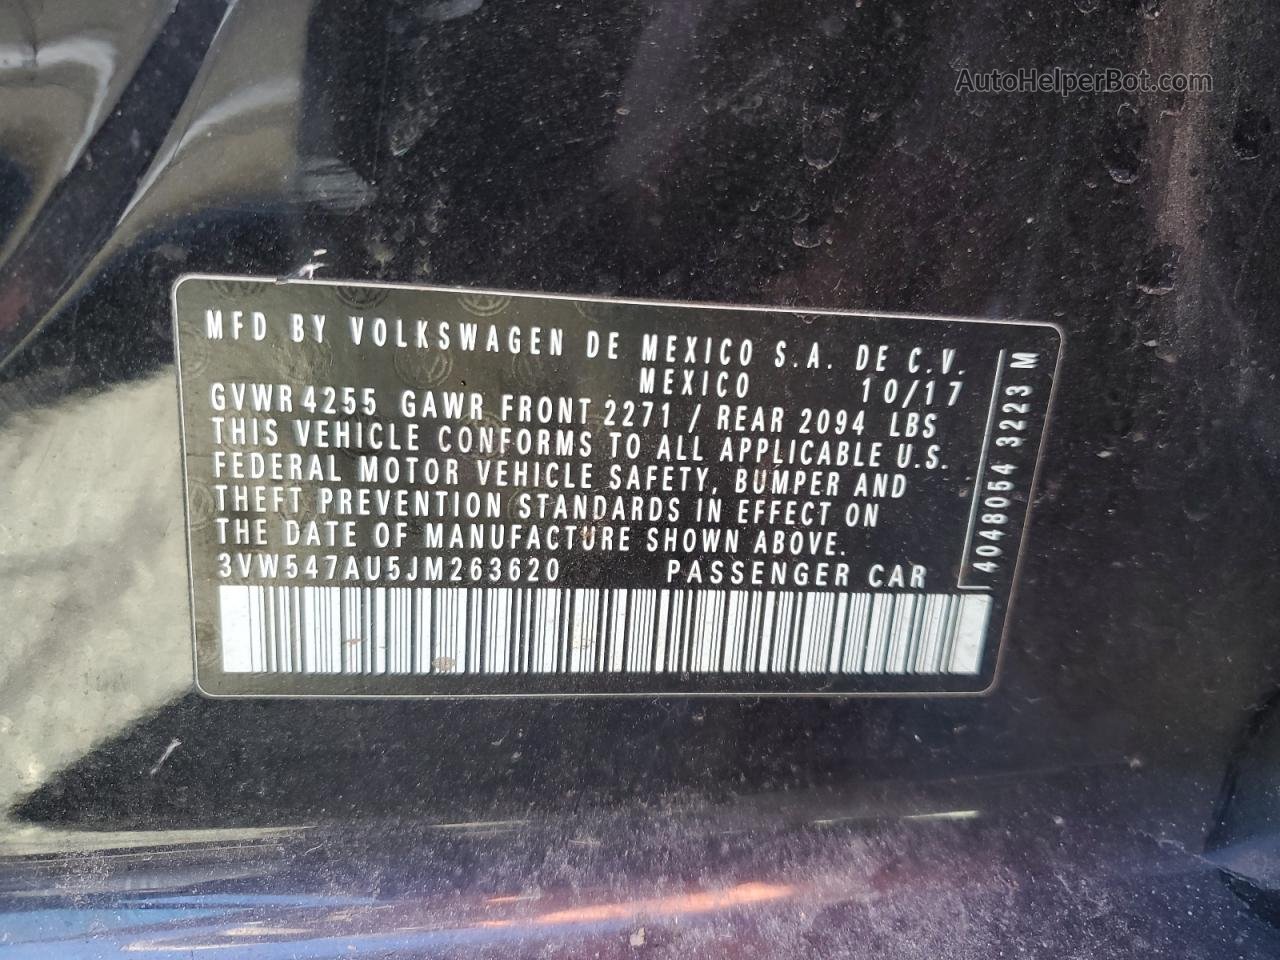 2018 Volkswagen Gti S Черный vin: 3VW547AU5JM263620